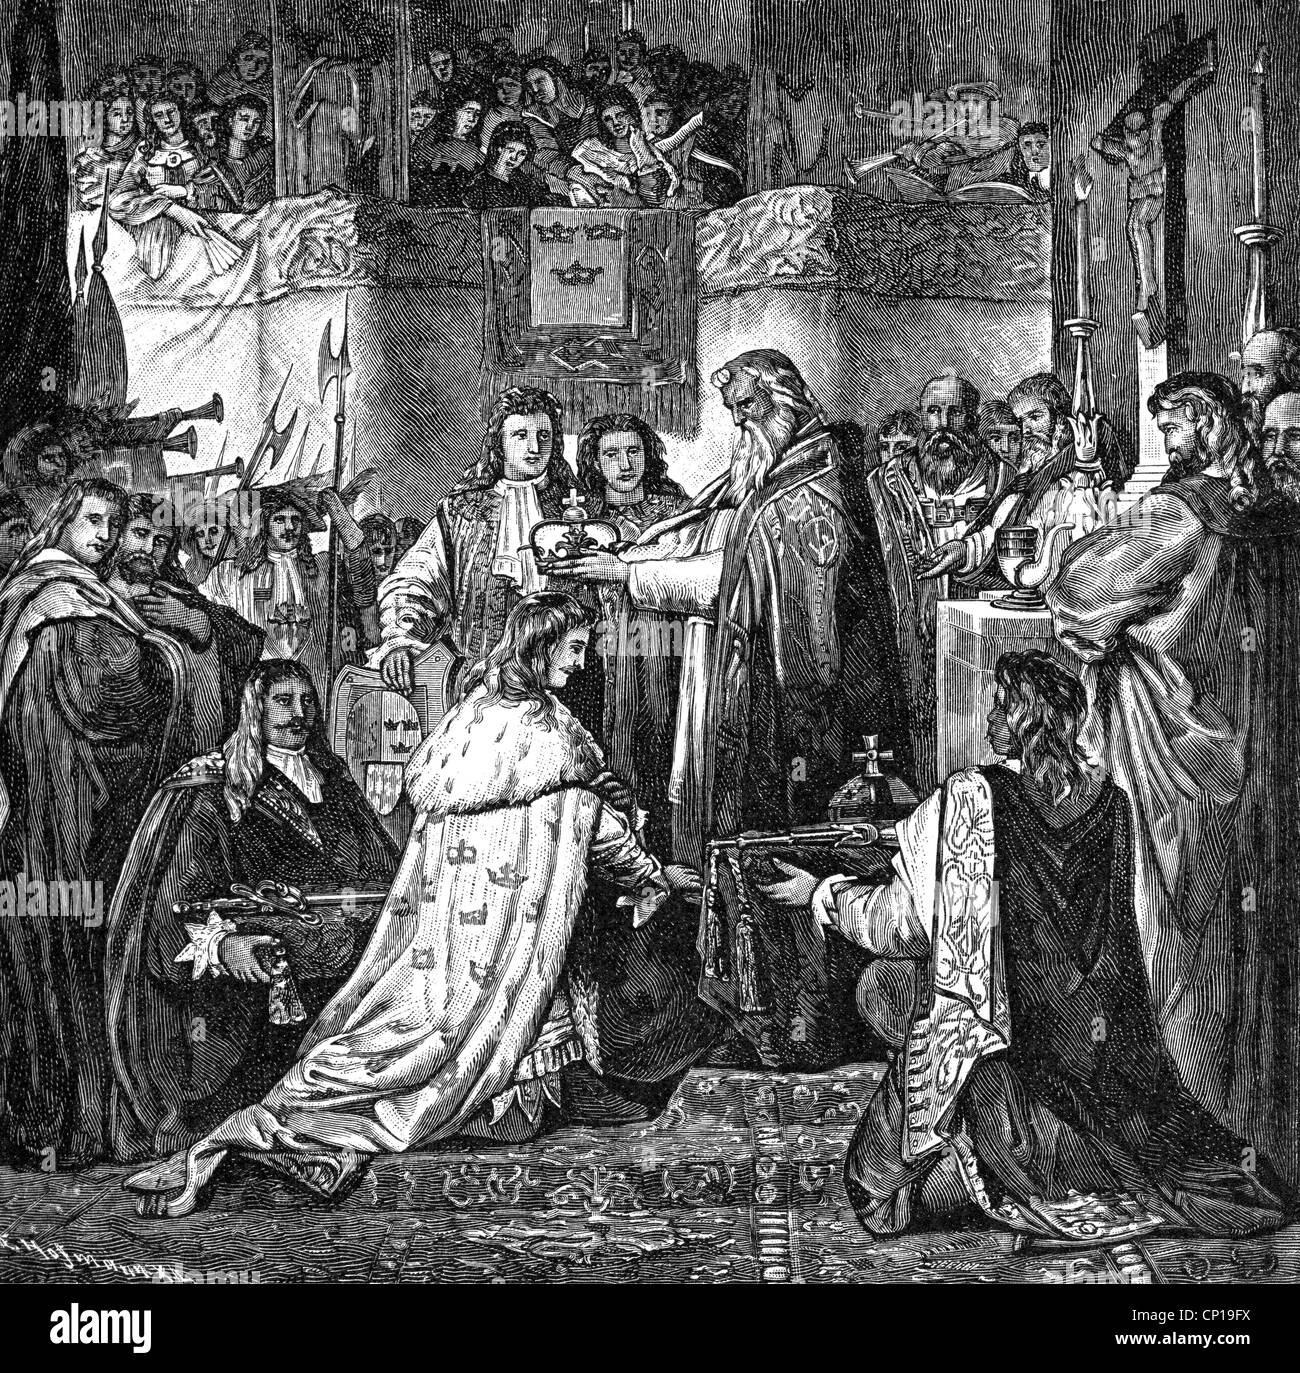 Charles X Gustav, 8.11.1622 - 23 2.1660, König von Schweden 16.6.1654 - 23.2.1660, Krönung im Dom von Uppsala, 1654, Holzgravur, 19. Jahrhundert, Stockfoto